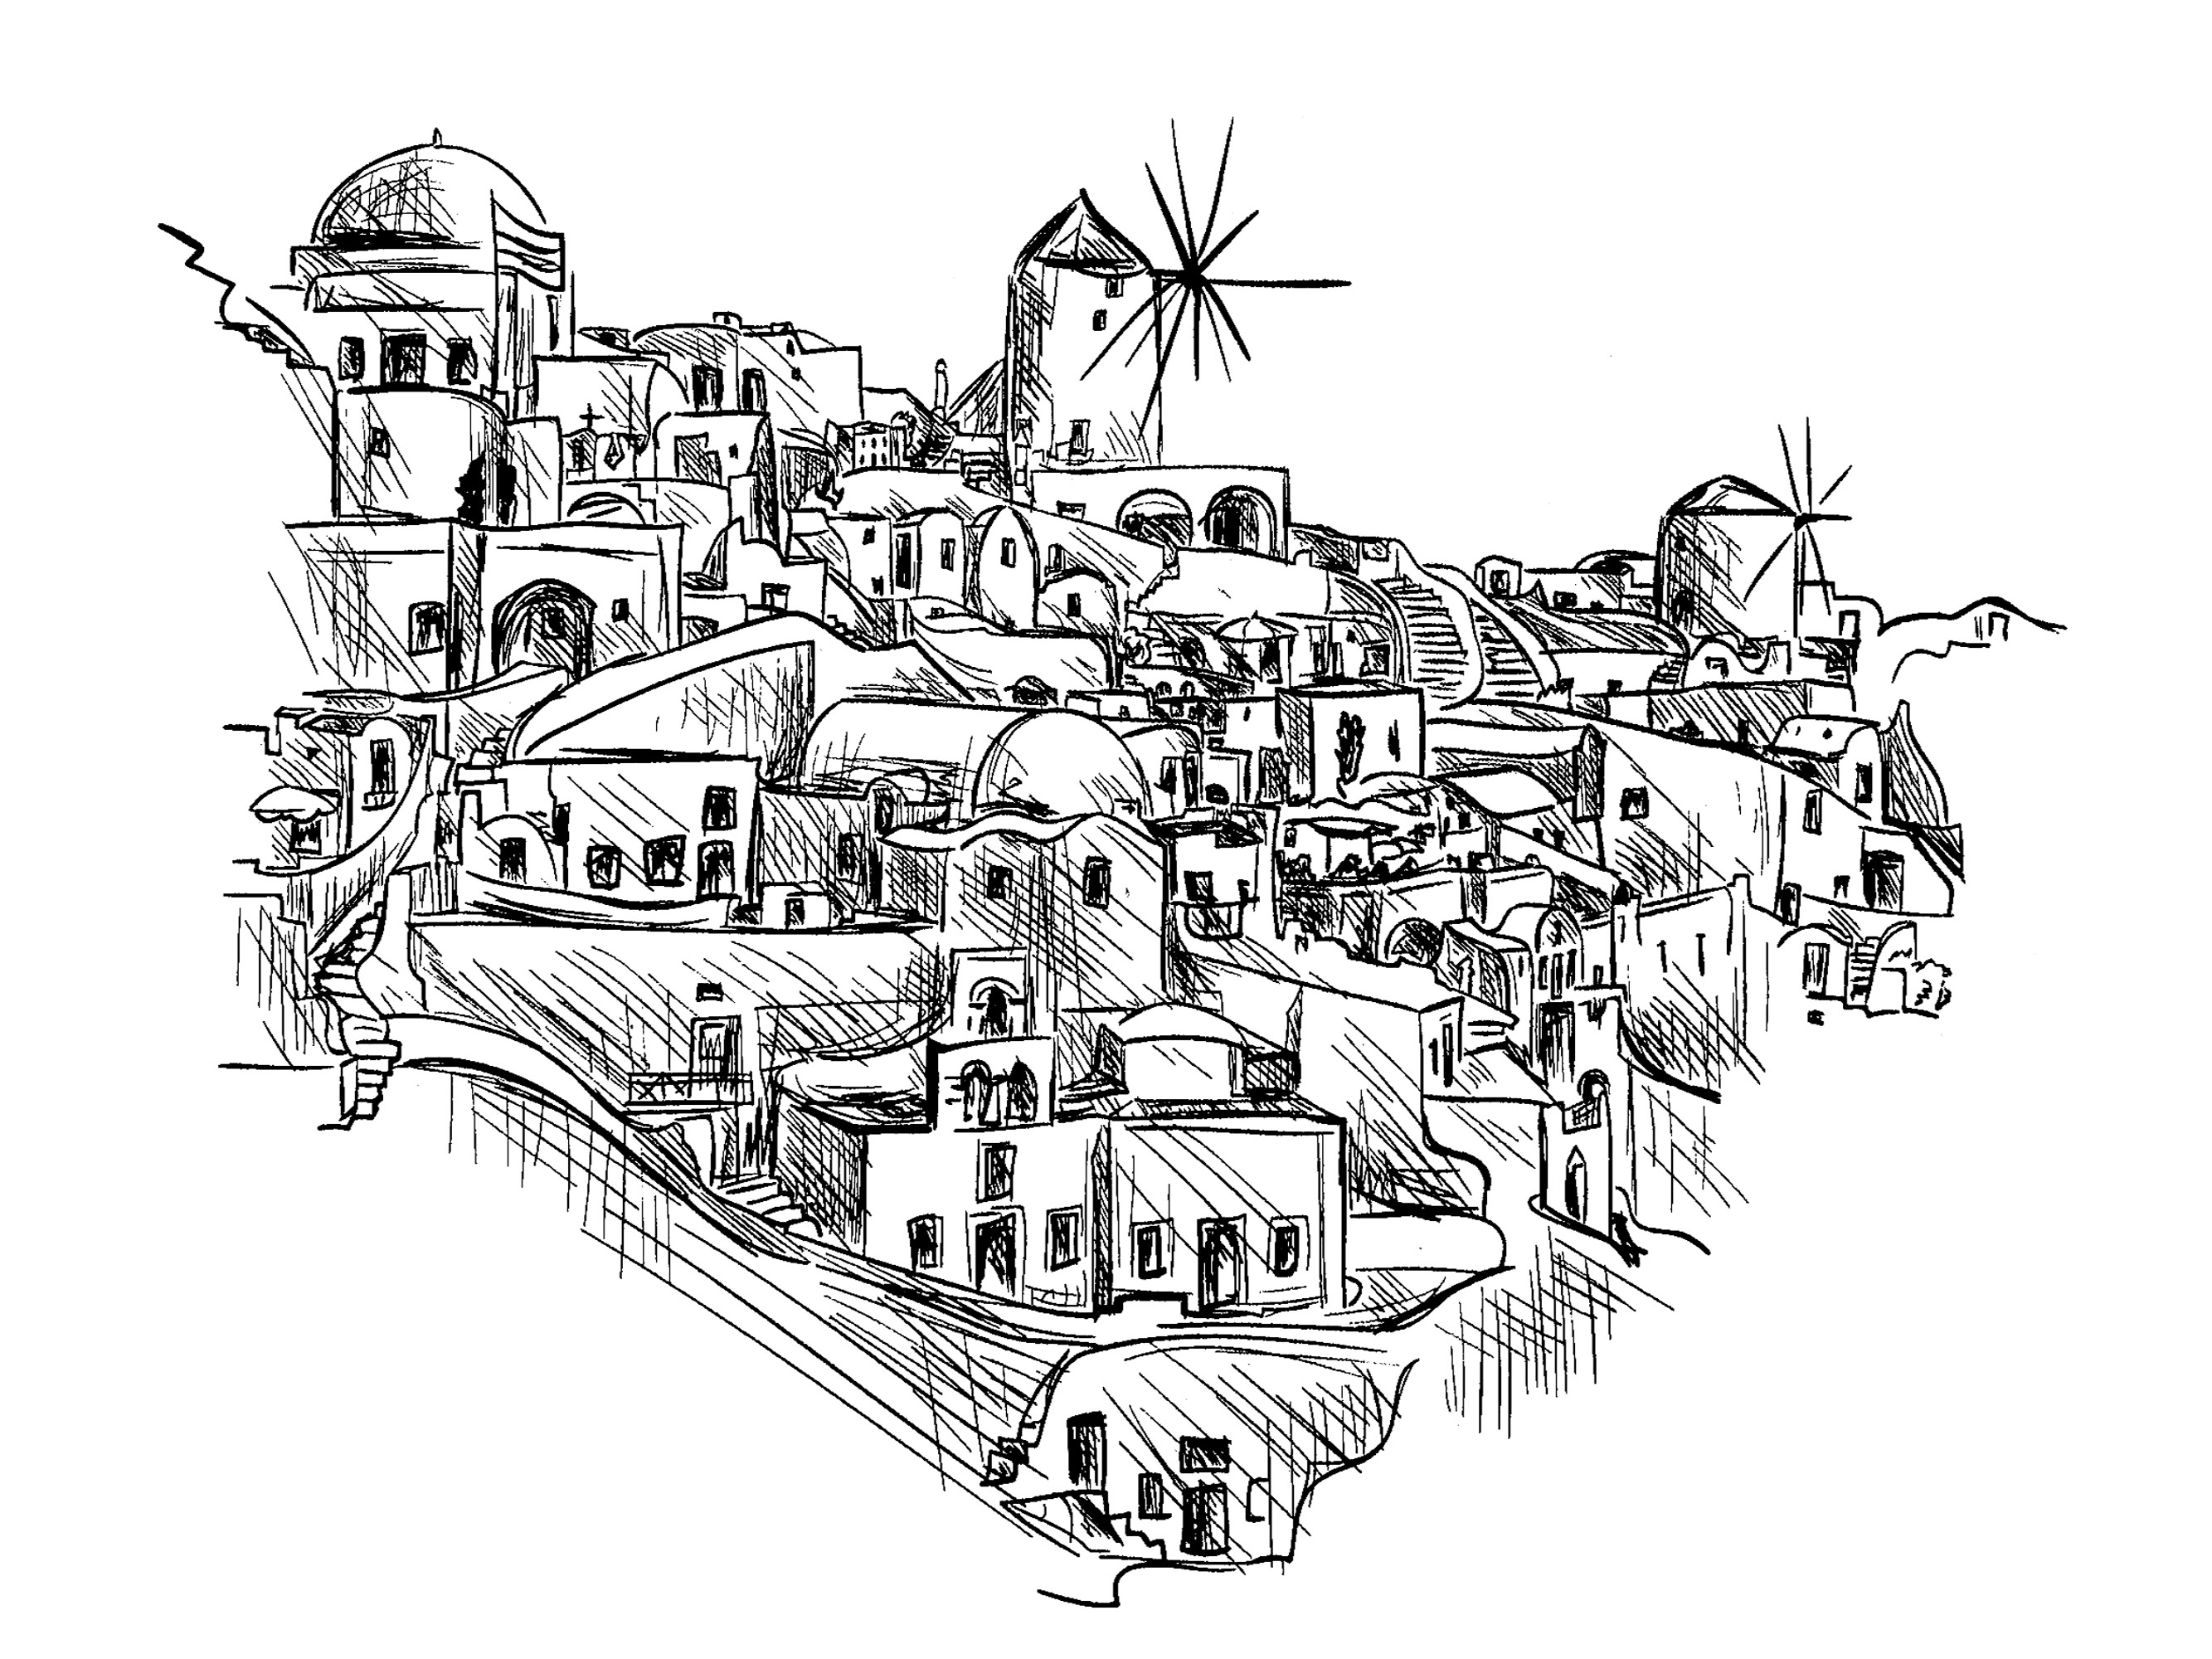 Zeichnung eines traditionellen Dorfes in Griechenland mit Windmühle und niedlichen Häusern